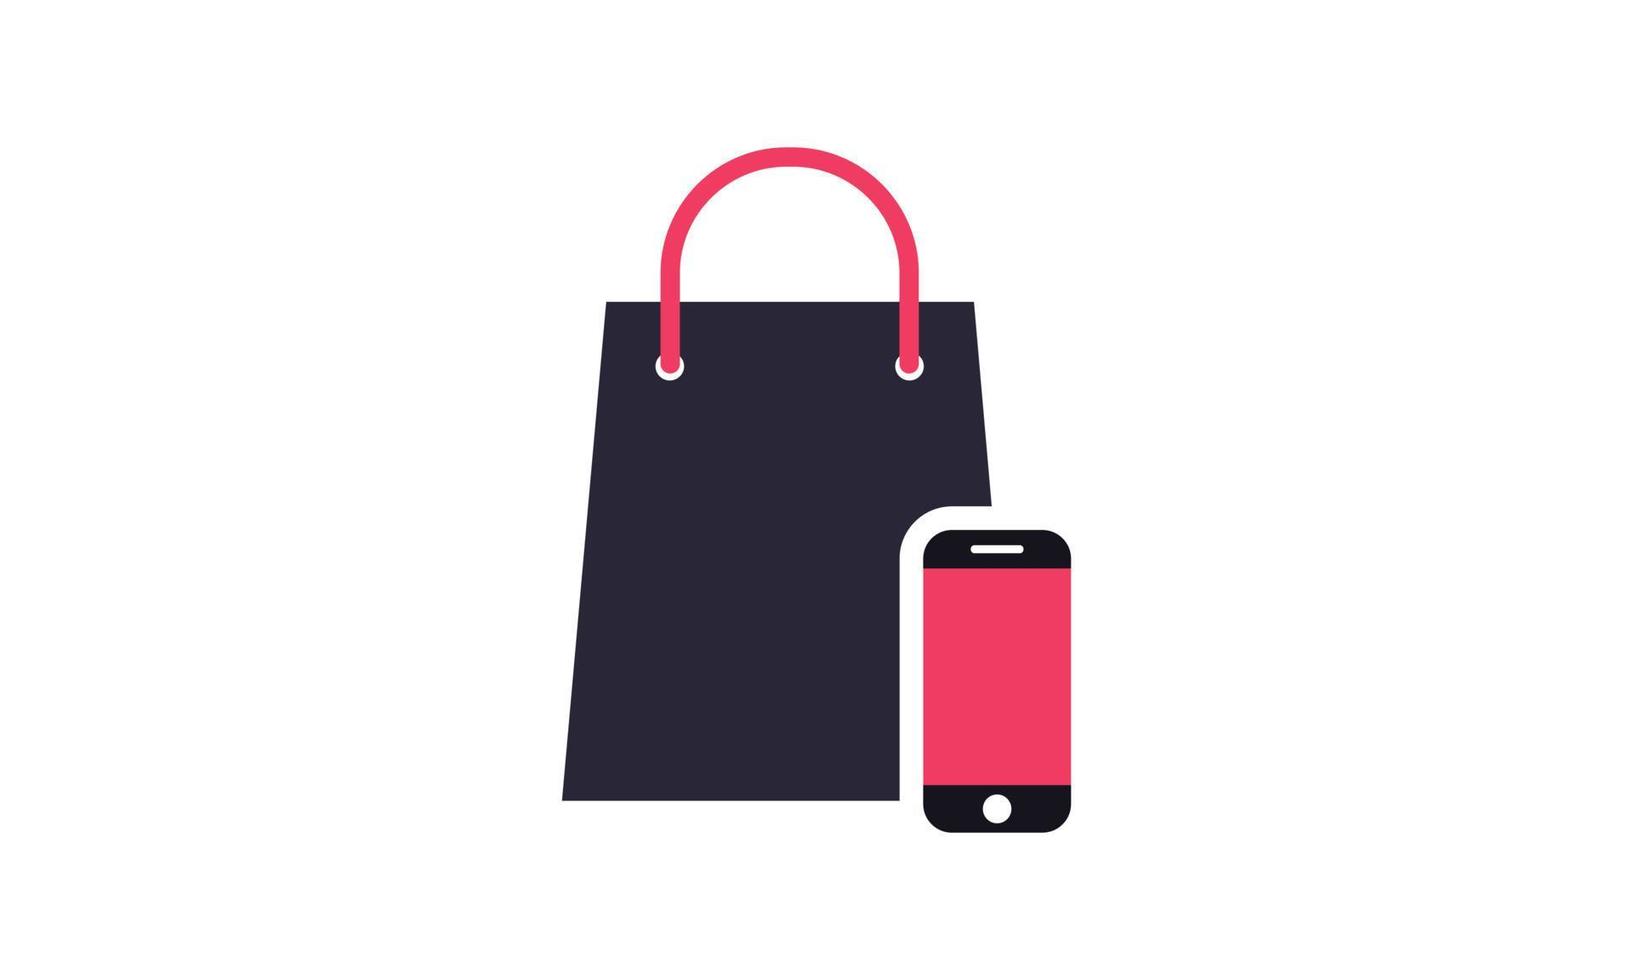 asbtract smart phone trolley tienda en línea logotipo diseños plantilla ilustración vector gráfico de compras y tienda